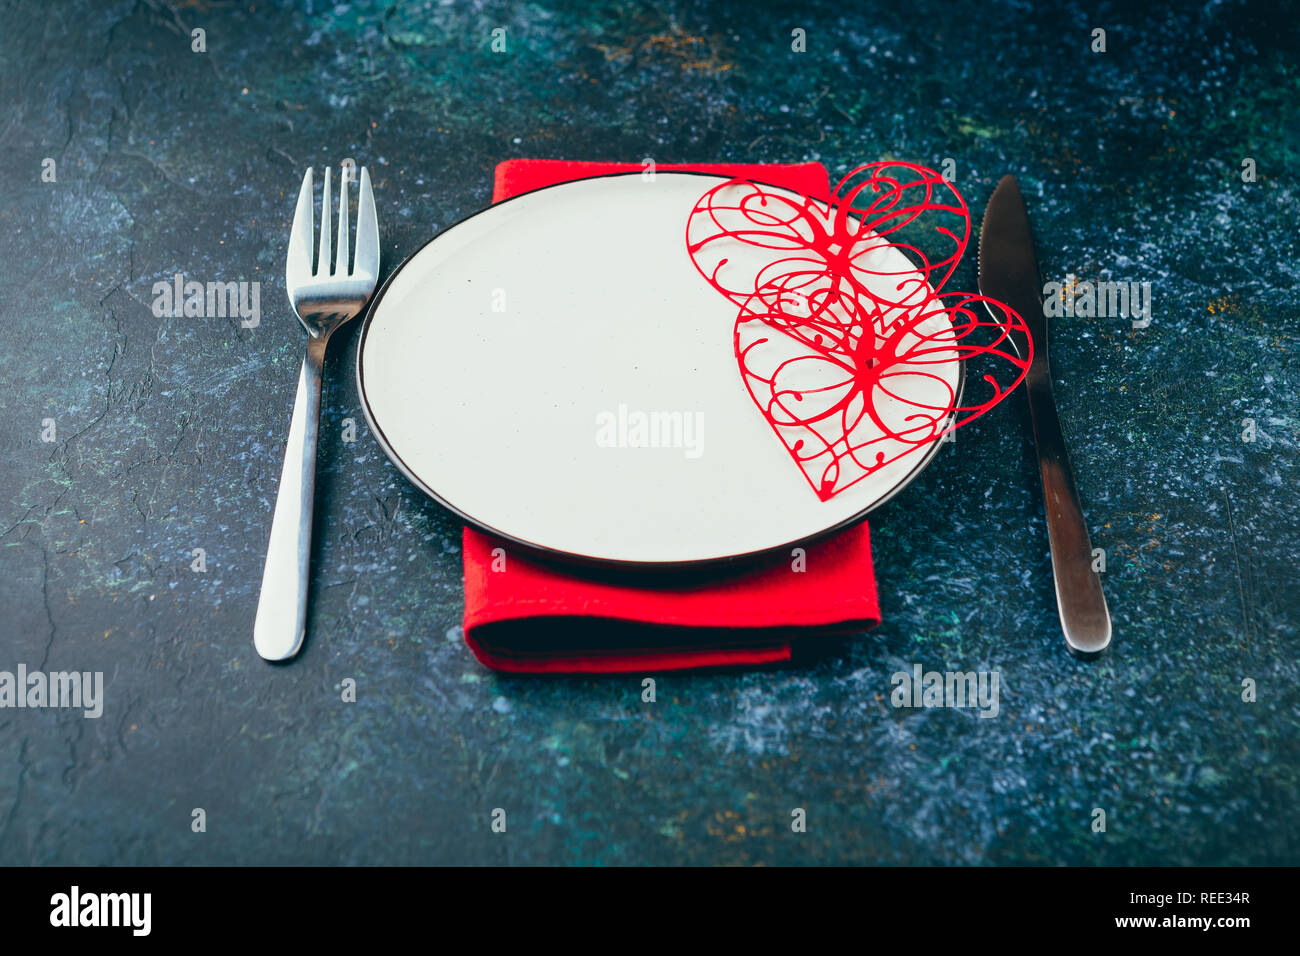 Valentinstag Tabelle einstellen. Tabelle mit Platte, Herzen, rot Geschenk cjocolate boxws, Süßigkeiten, Messer und Gabel onblue Hintergrund. Top ansehen und kopieren Spa Stockfoto